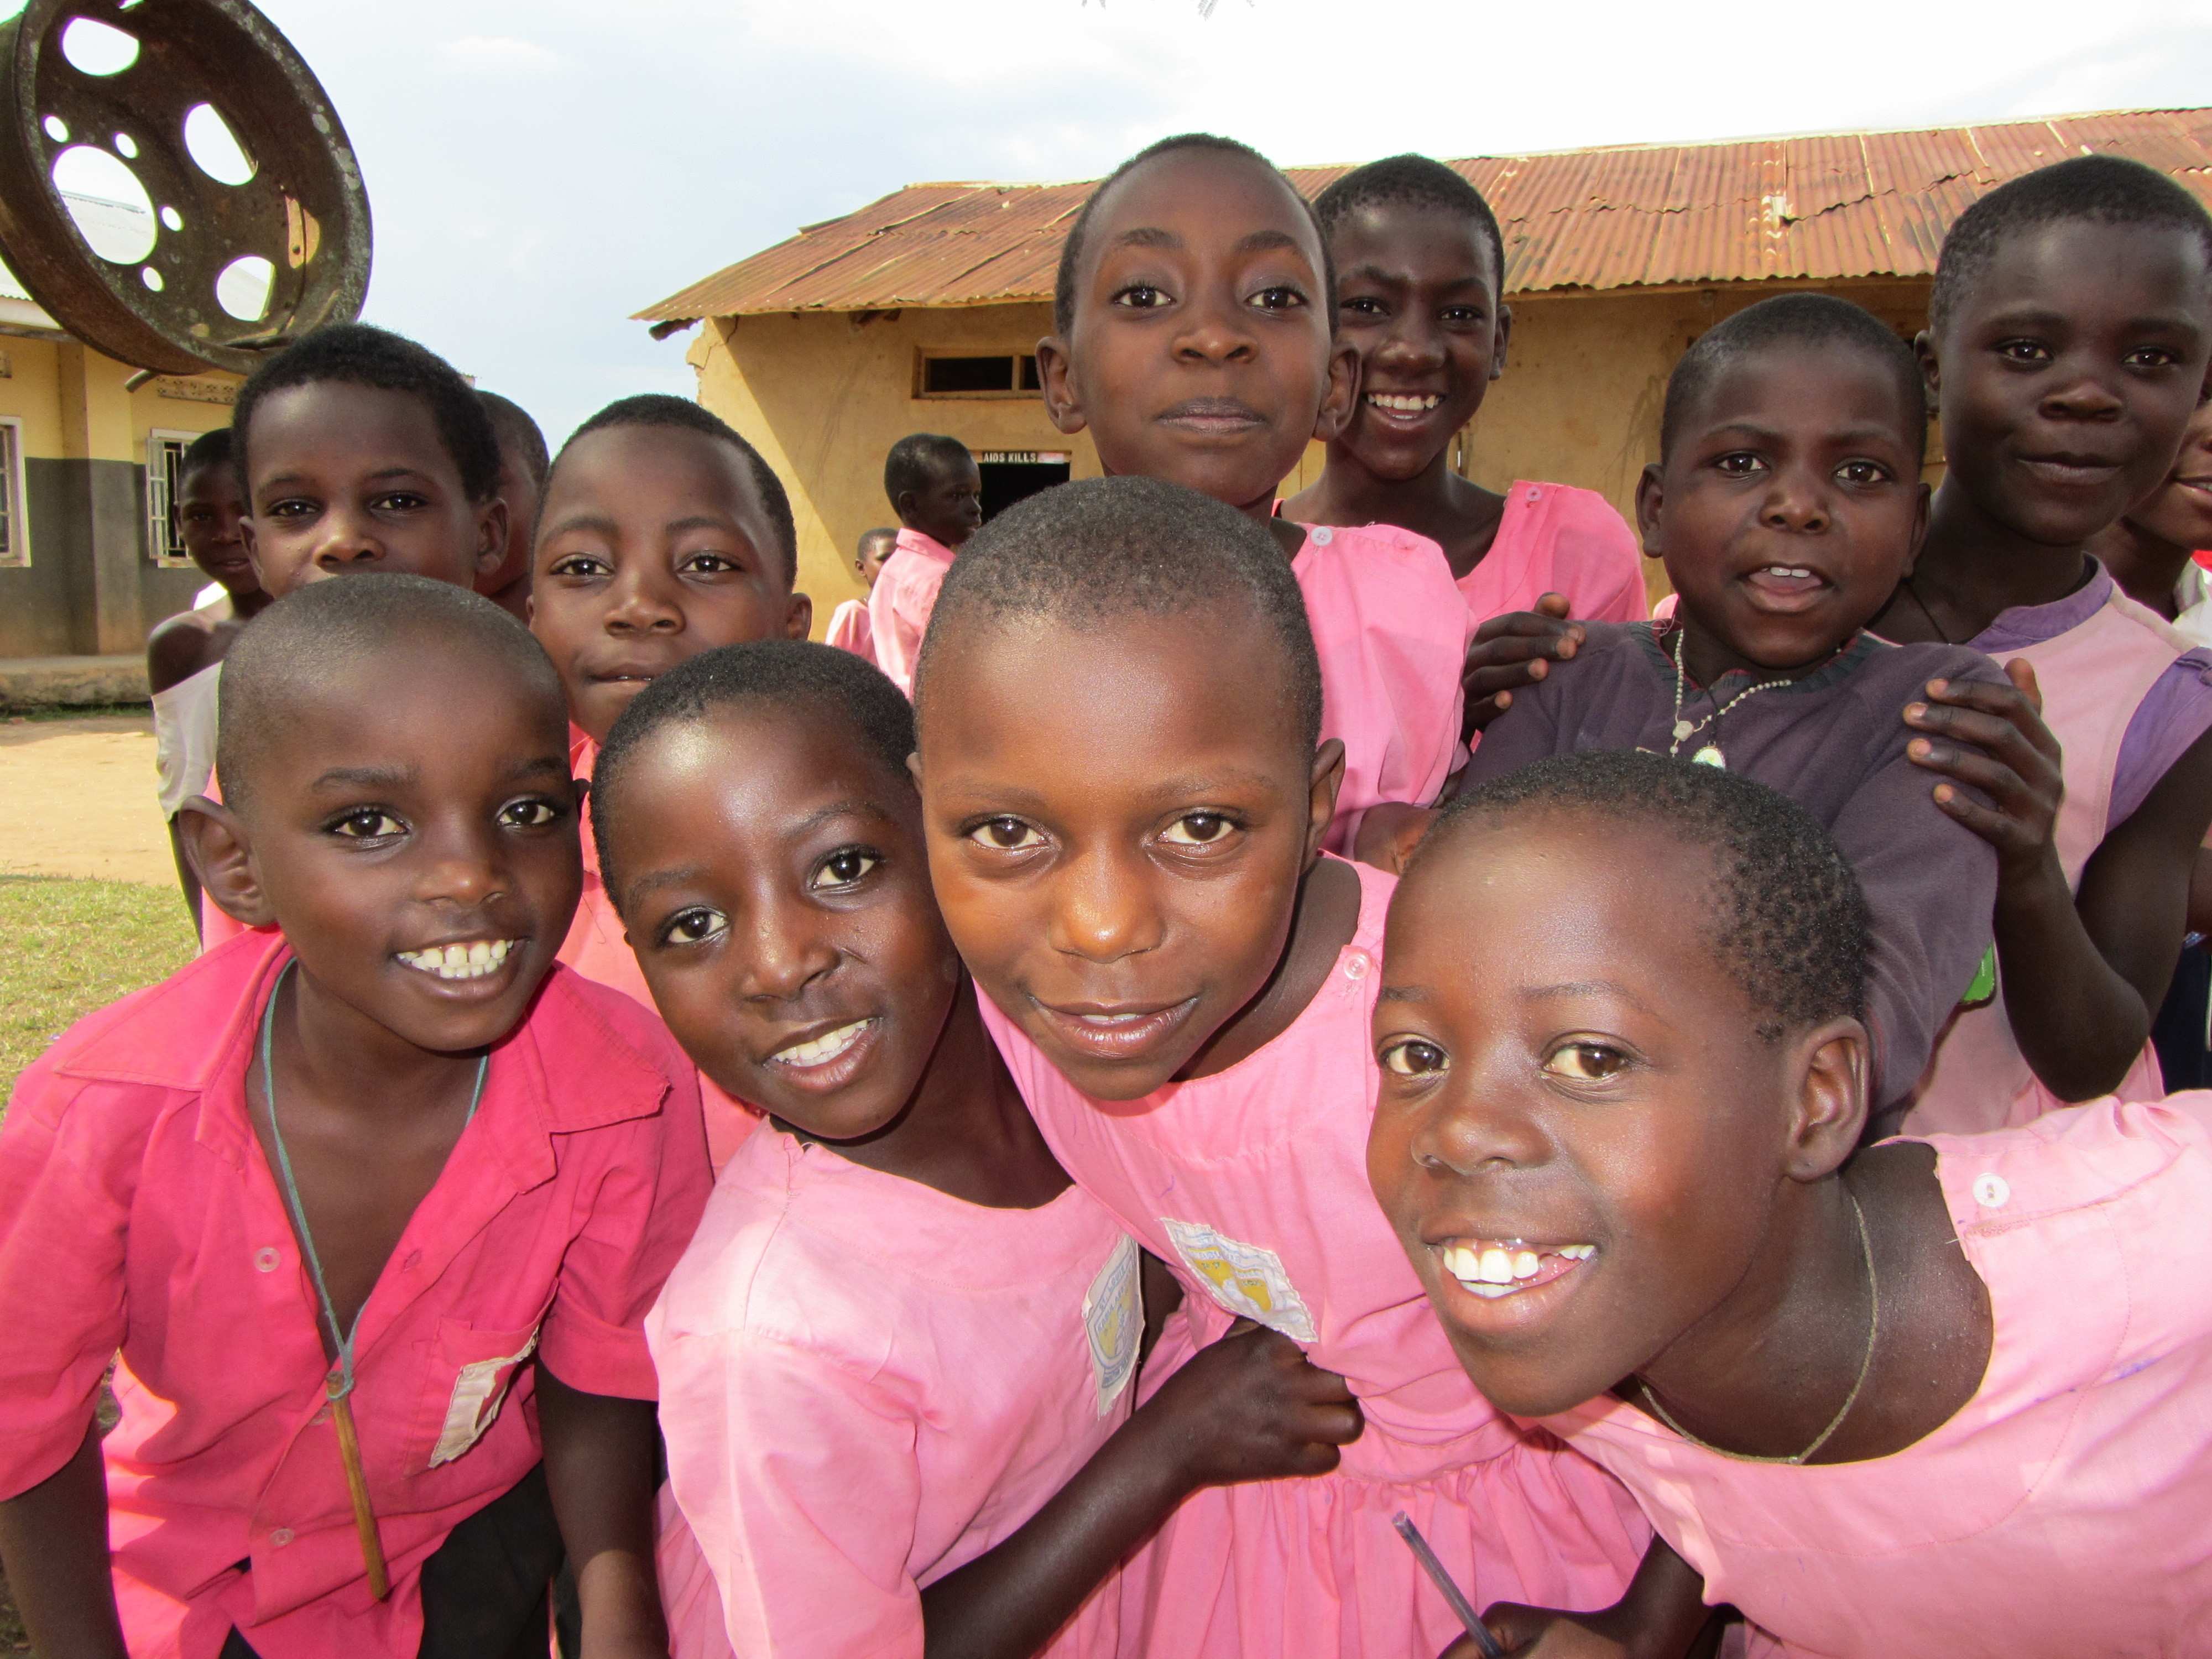 Kinder aus Uganda in ihren farbenfrohen Schuluniformen (Quelle: Kindernothilfe)